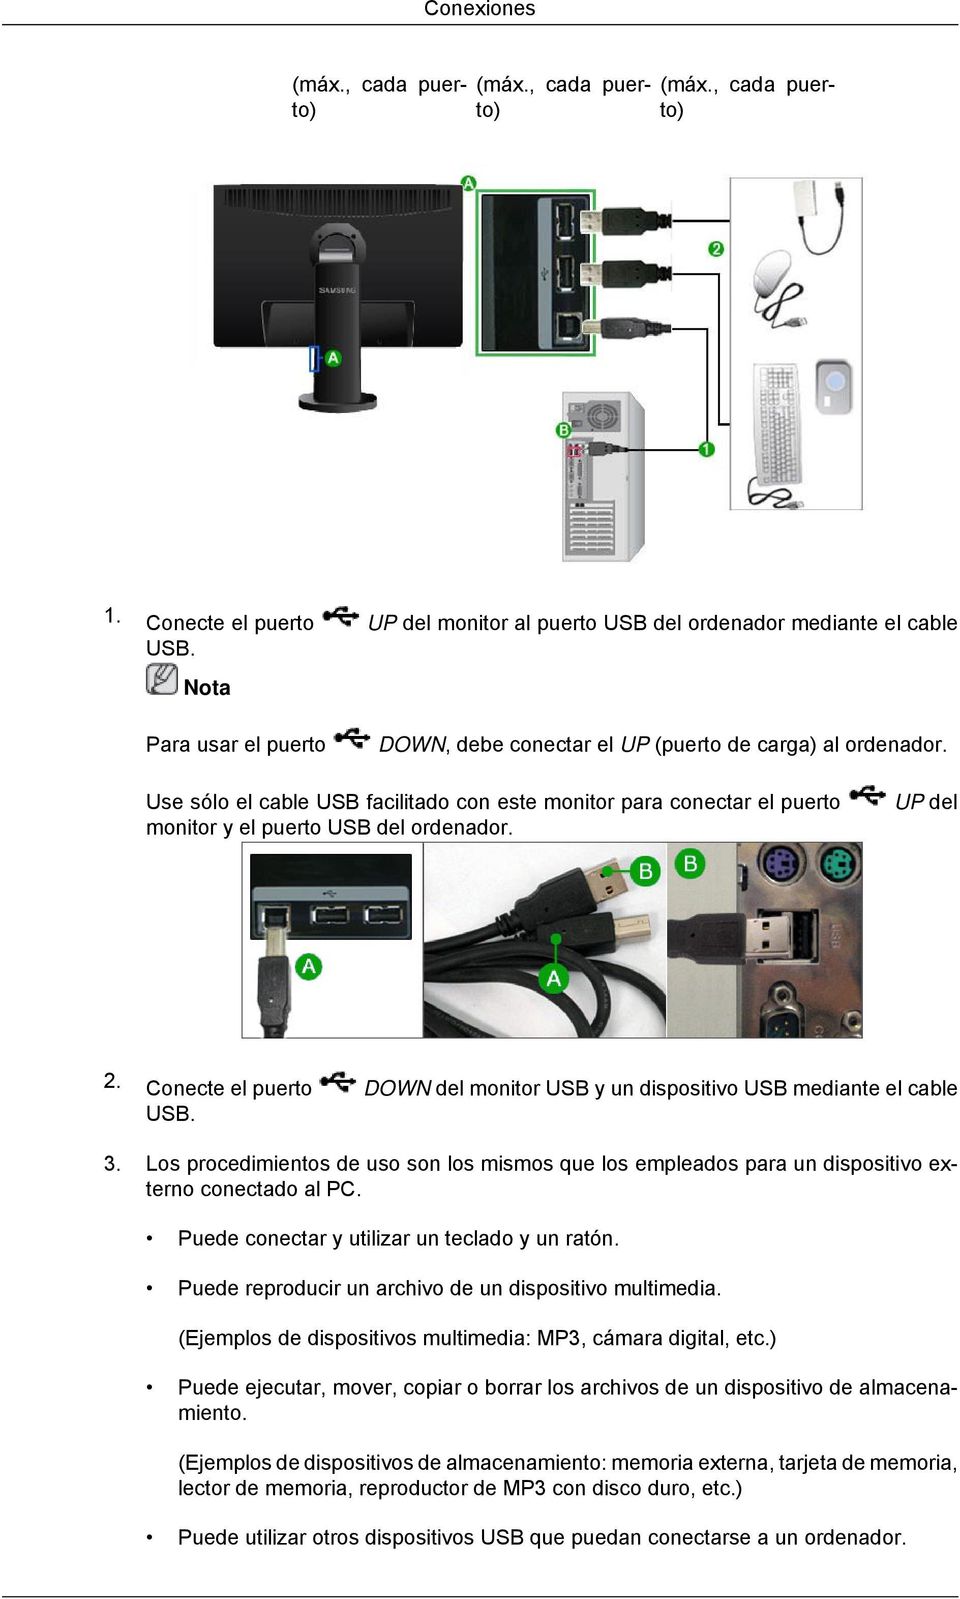 Conecte el puerto DOWN del monitor USB y un dispositivo USB mediante el cable USB. 3. Los procedimientos de uso son los mismos que los empleados para un dispositivo externo conectado al PC.